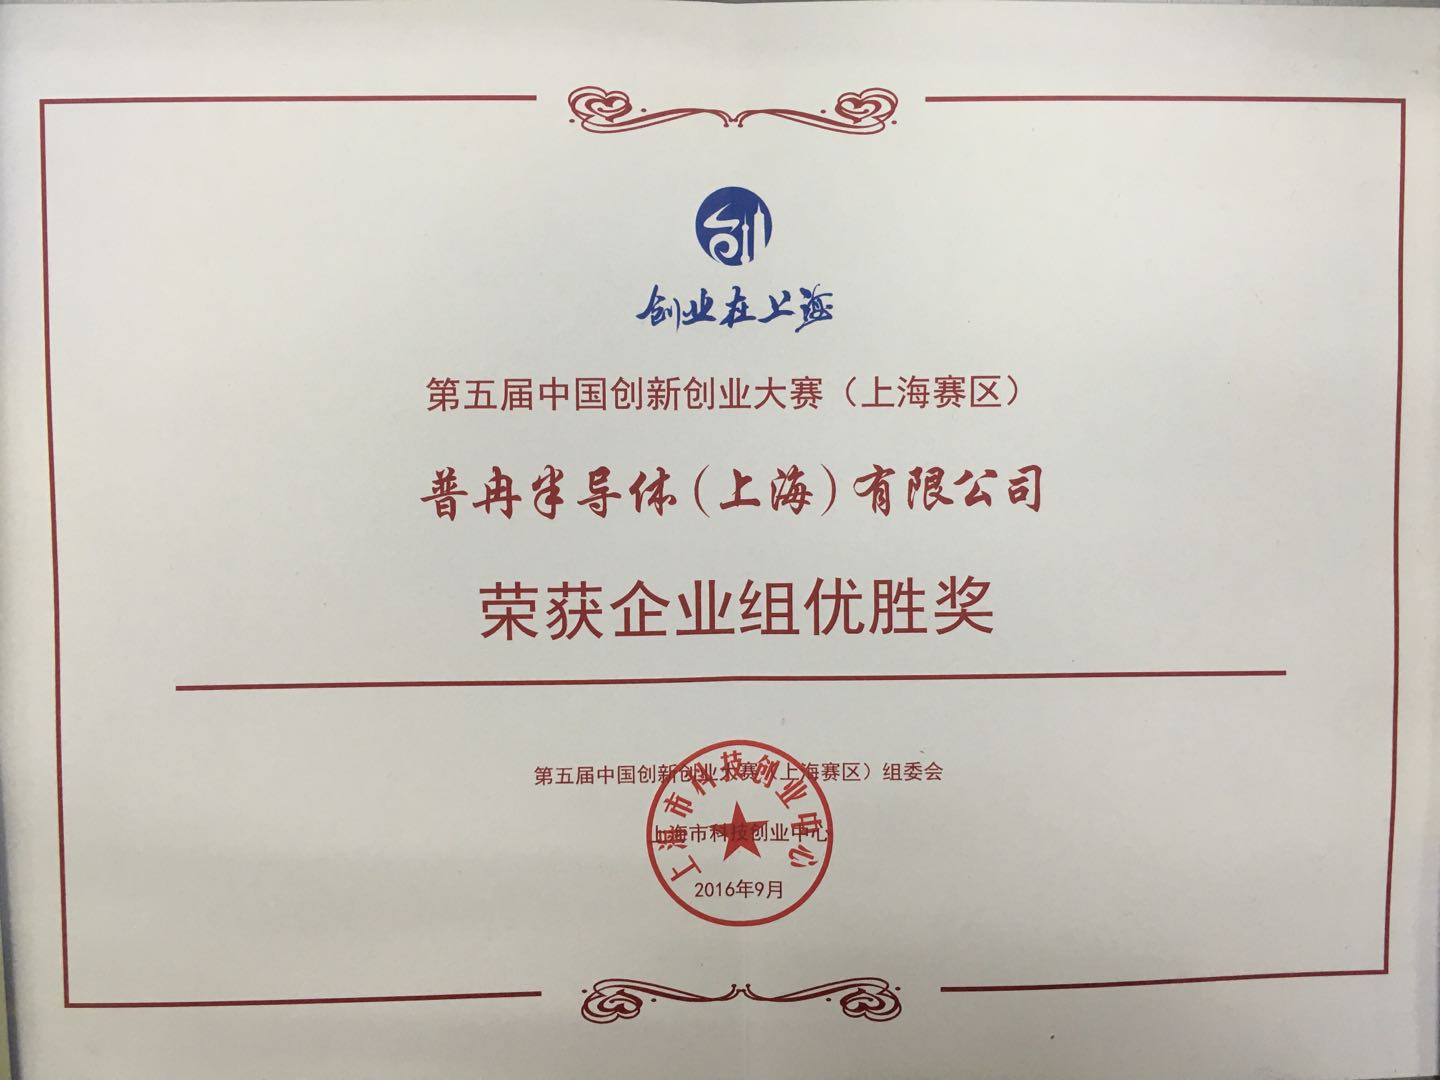 荣获第五届中国创新创业大赛 （上海赛区）企业组优胜奖